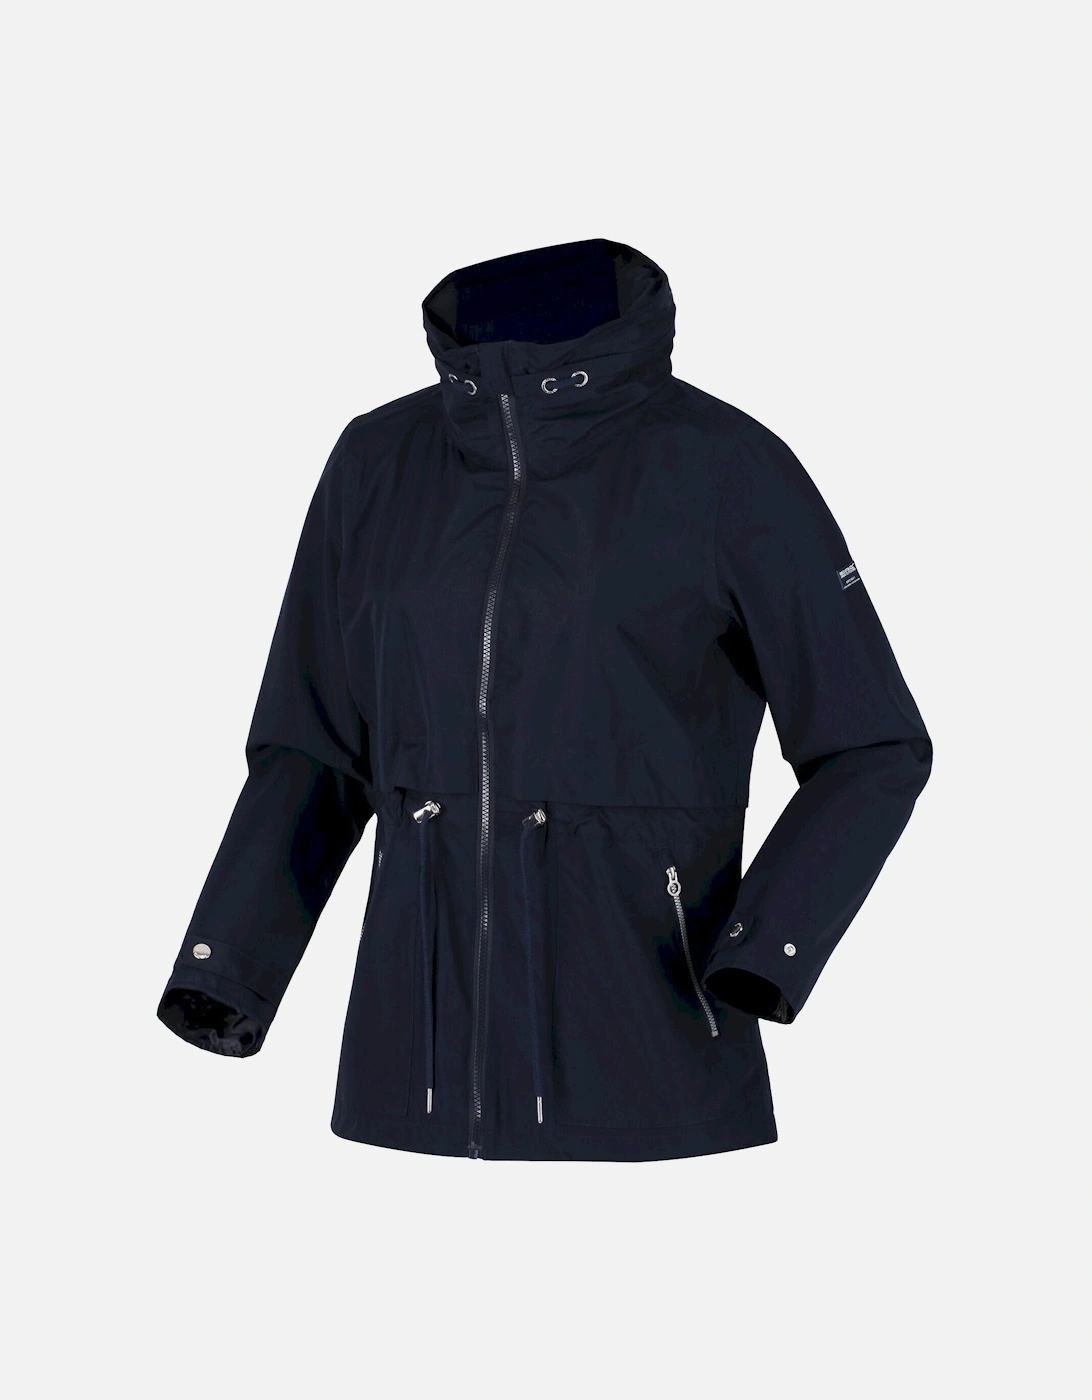 Womens/Ladies Nadira Waterproof Jacket